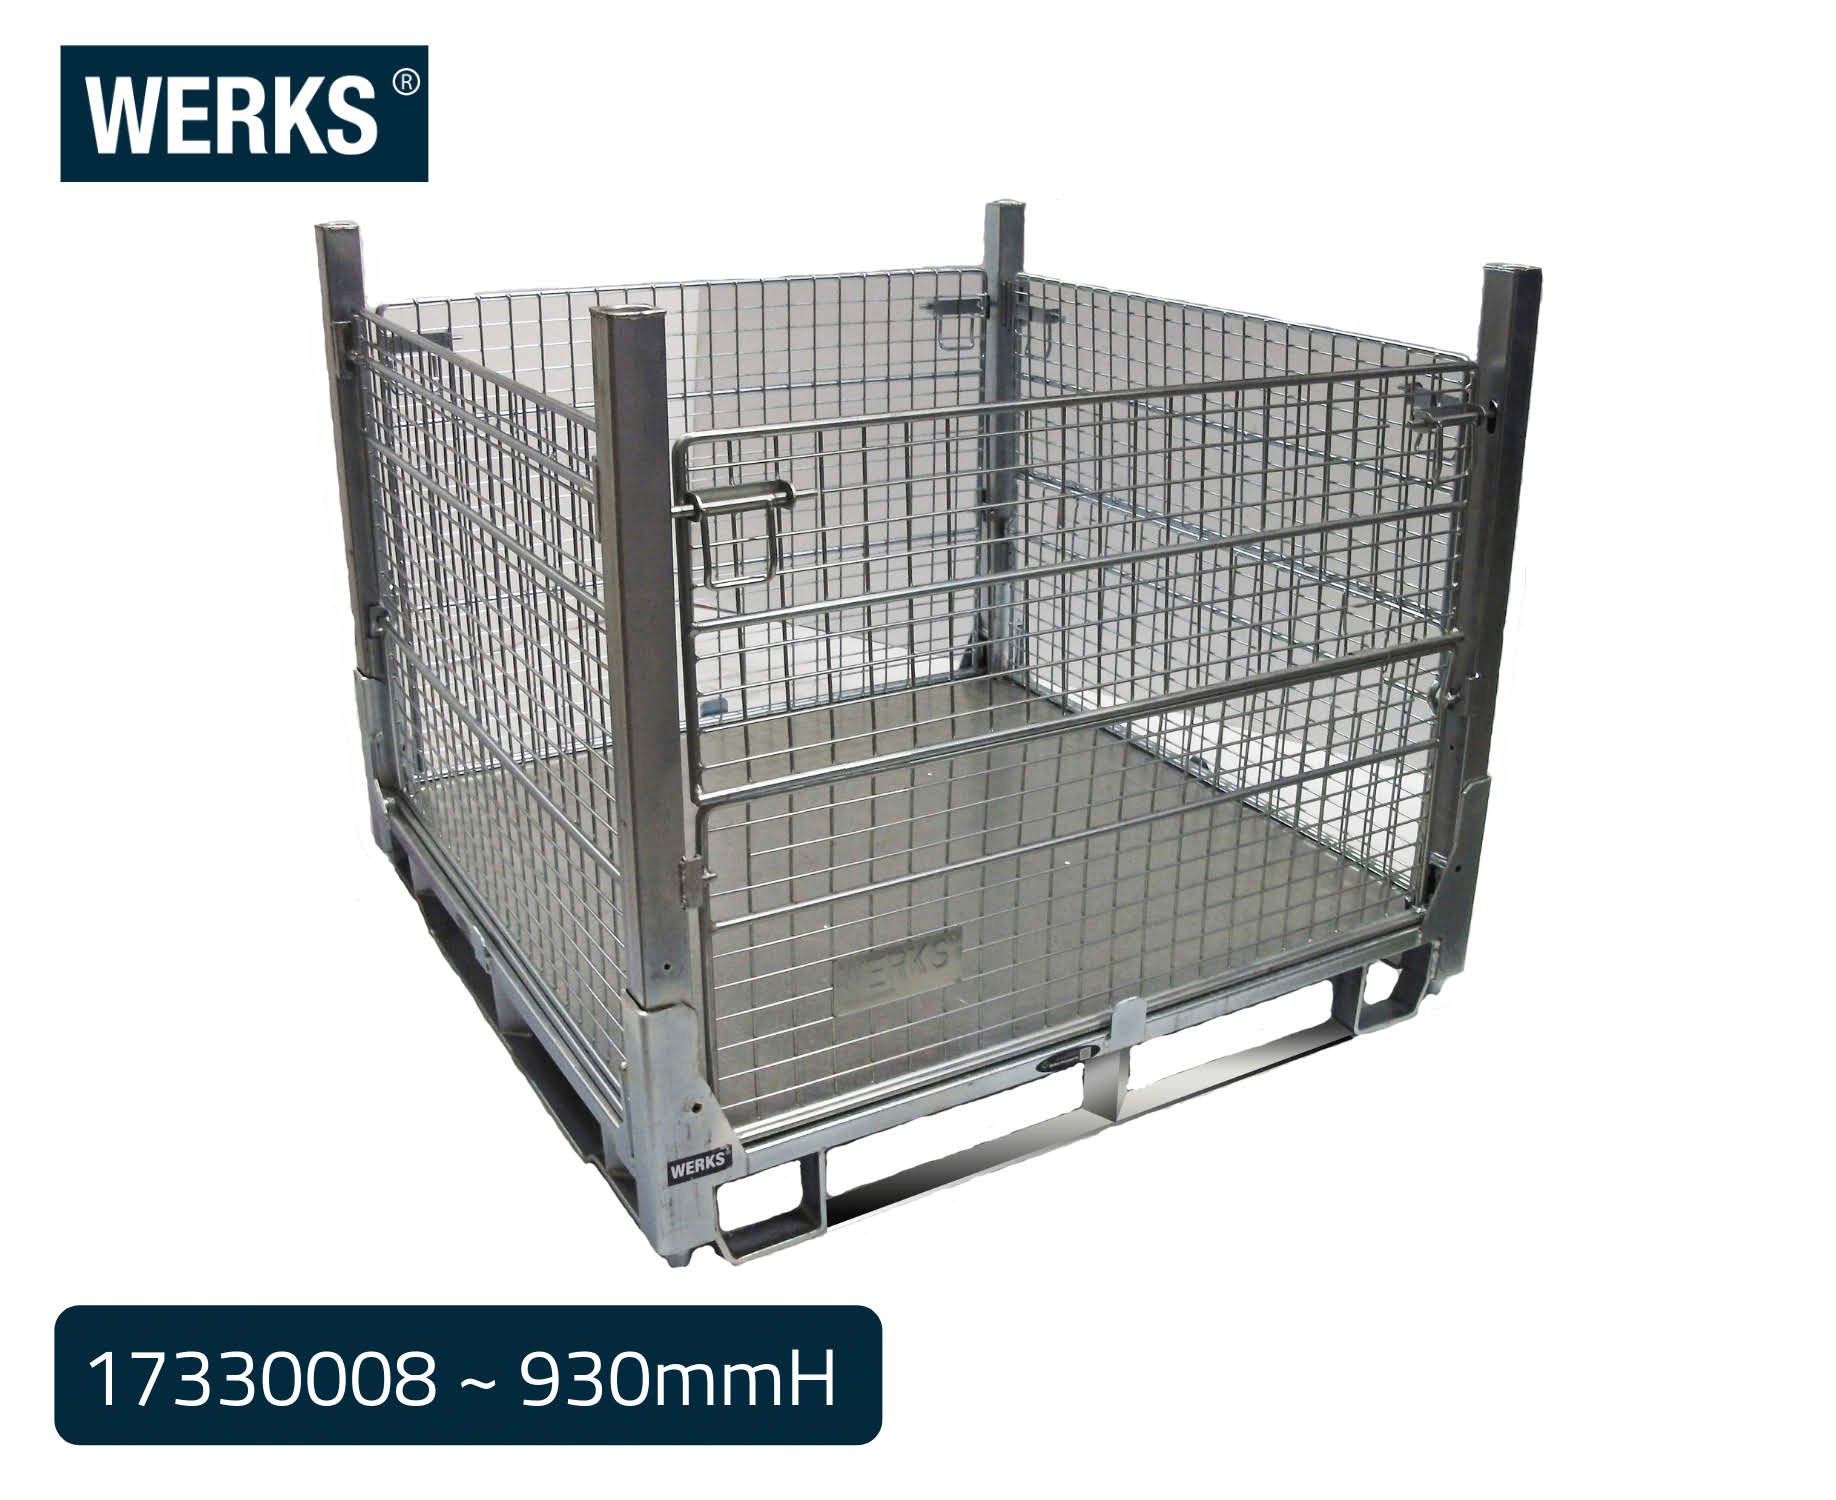 WERKS® Zinc Pallet Cages - Insert Feet Design